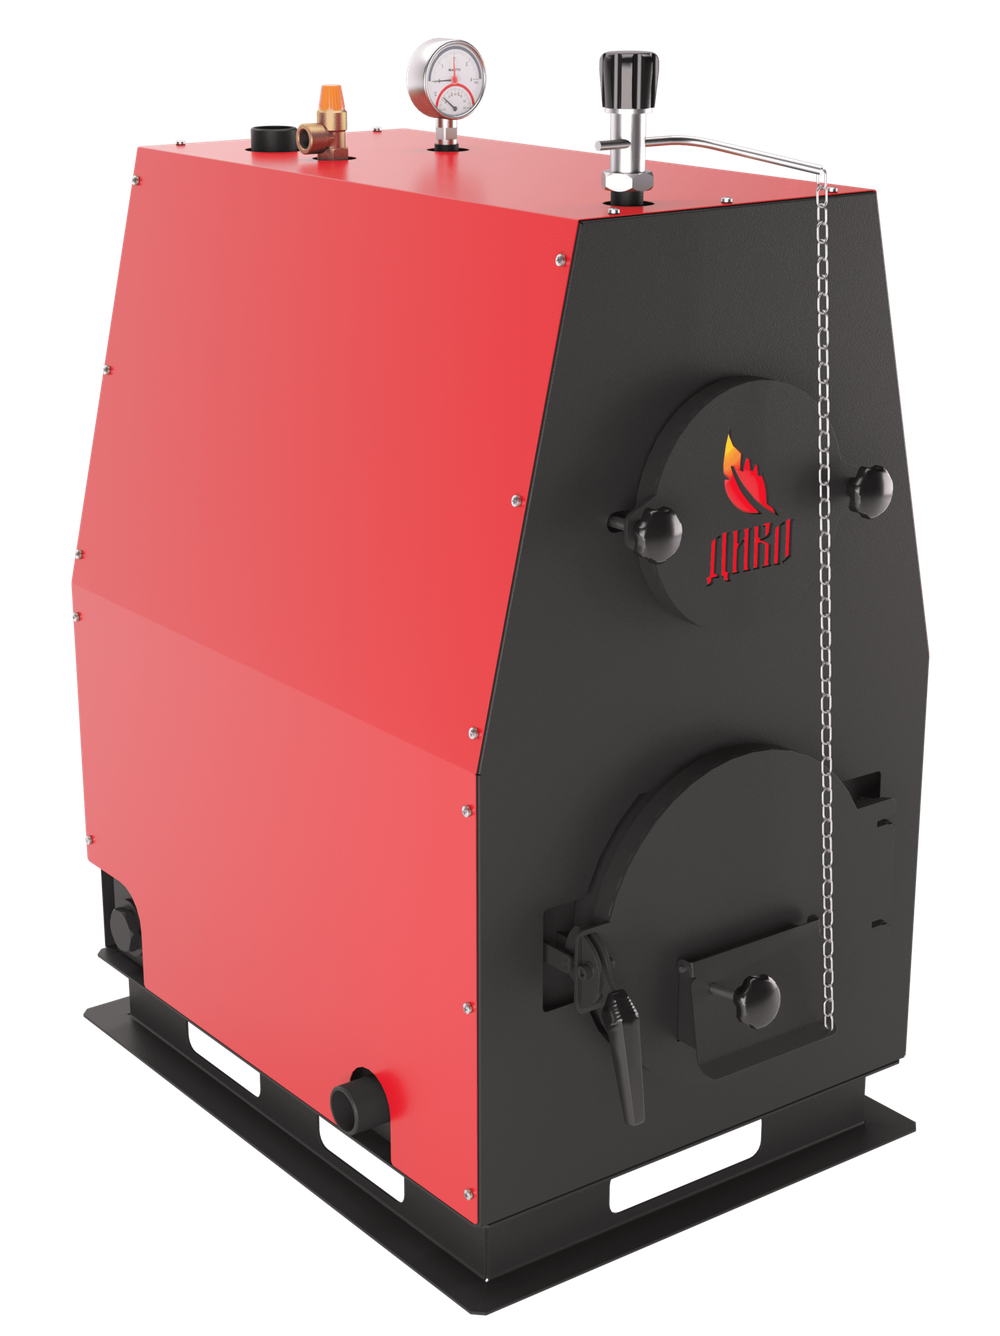 Твердотопливный котел длительного горения ДИВО-50 в кожухе на 50 кВт. Помещение до 1350 куб.м.